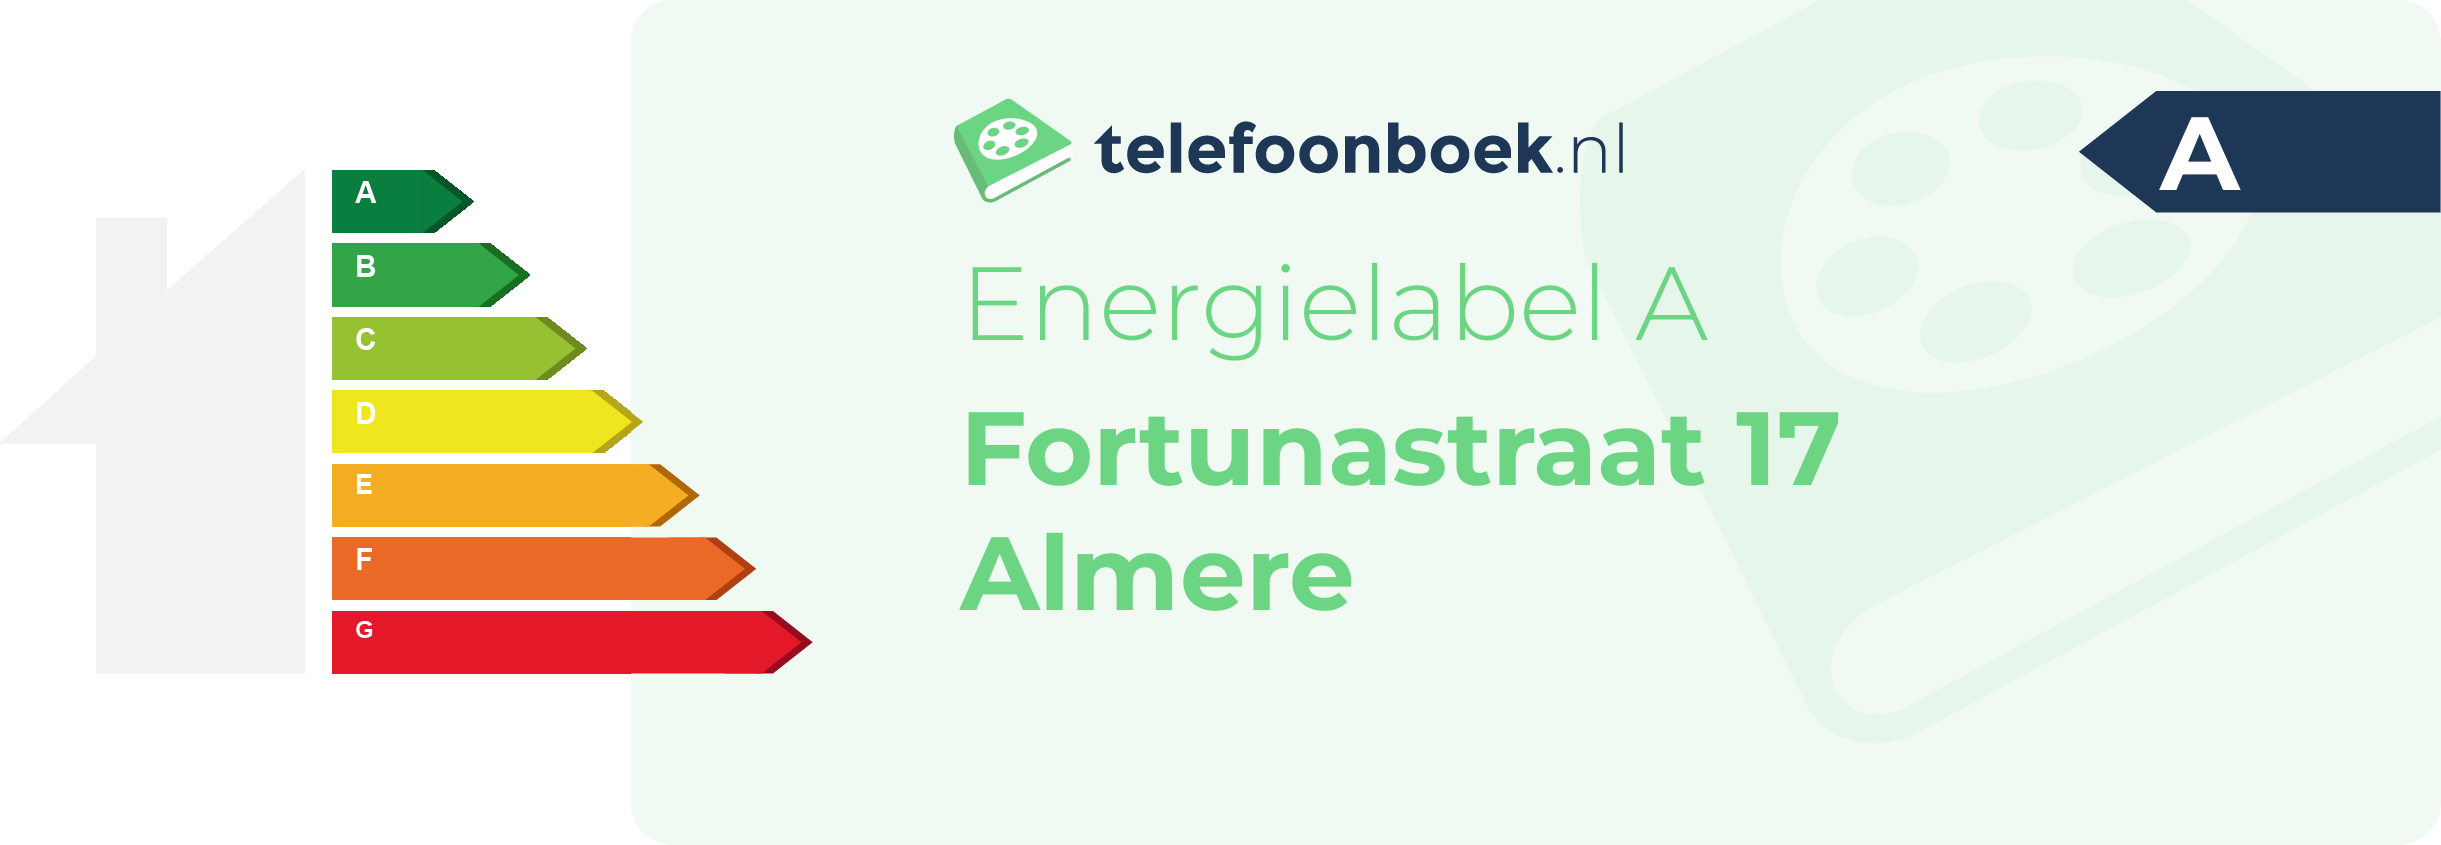 Energielabel Fortunastraat 17 Almere